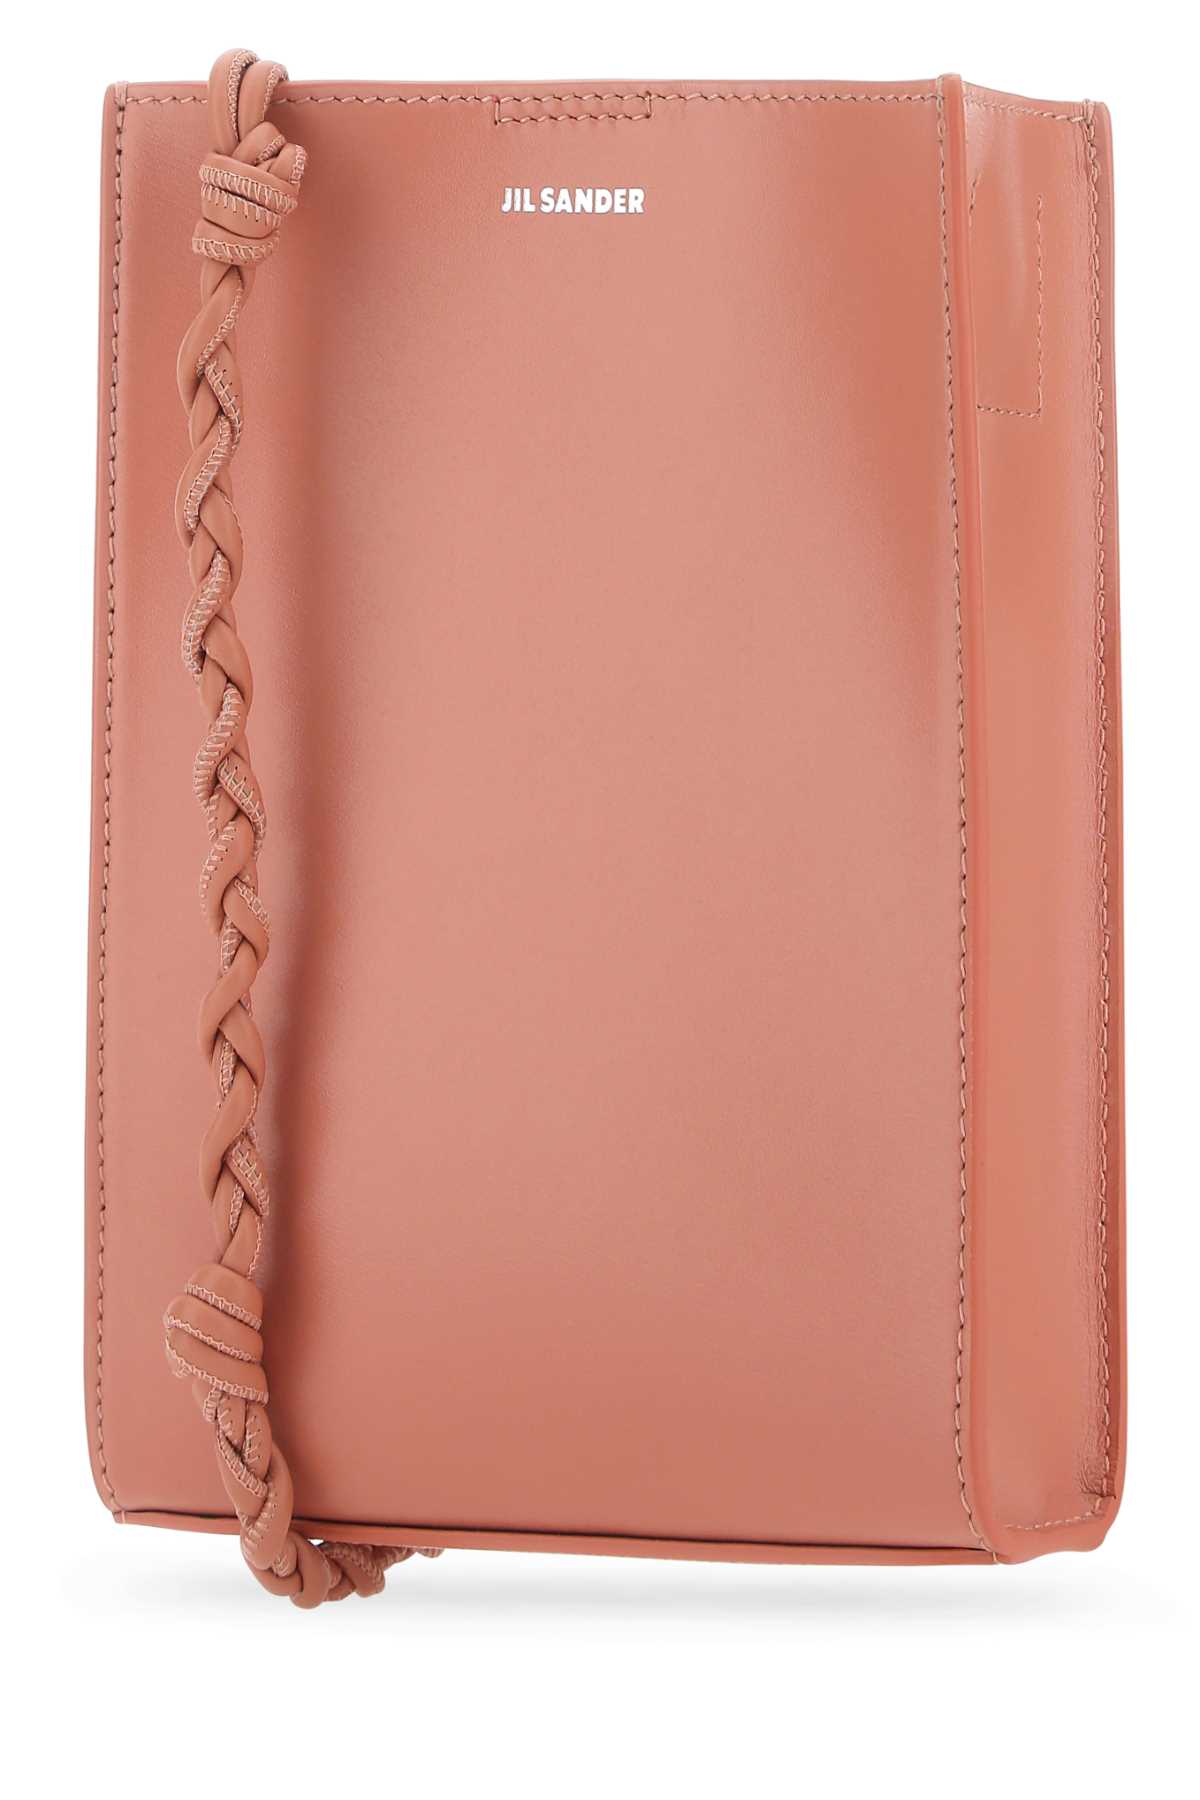 Jil Sander Pink Leather Small Tangle Shoulder Bag In 657